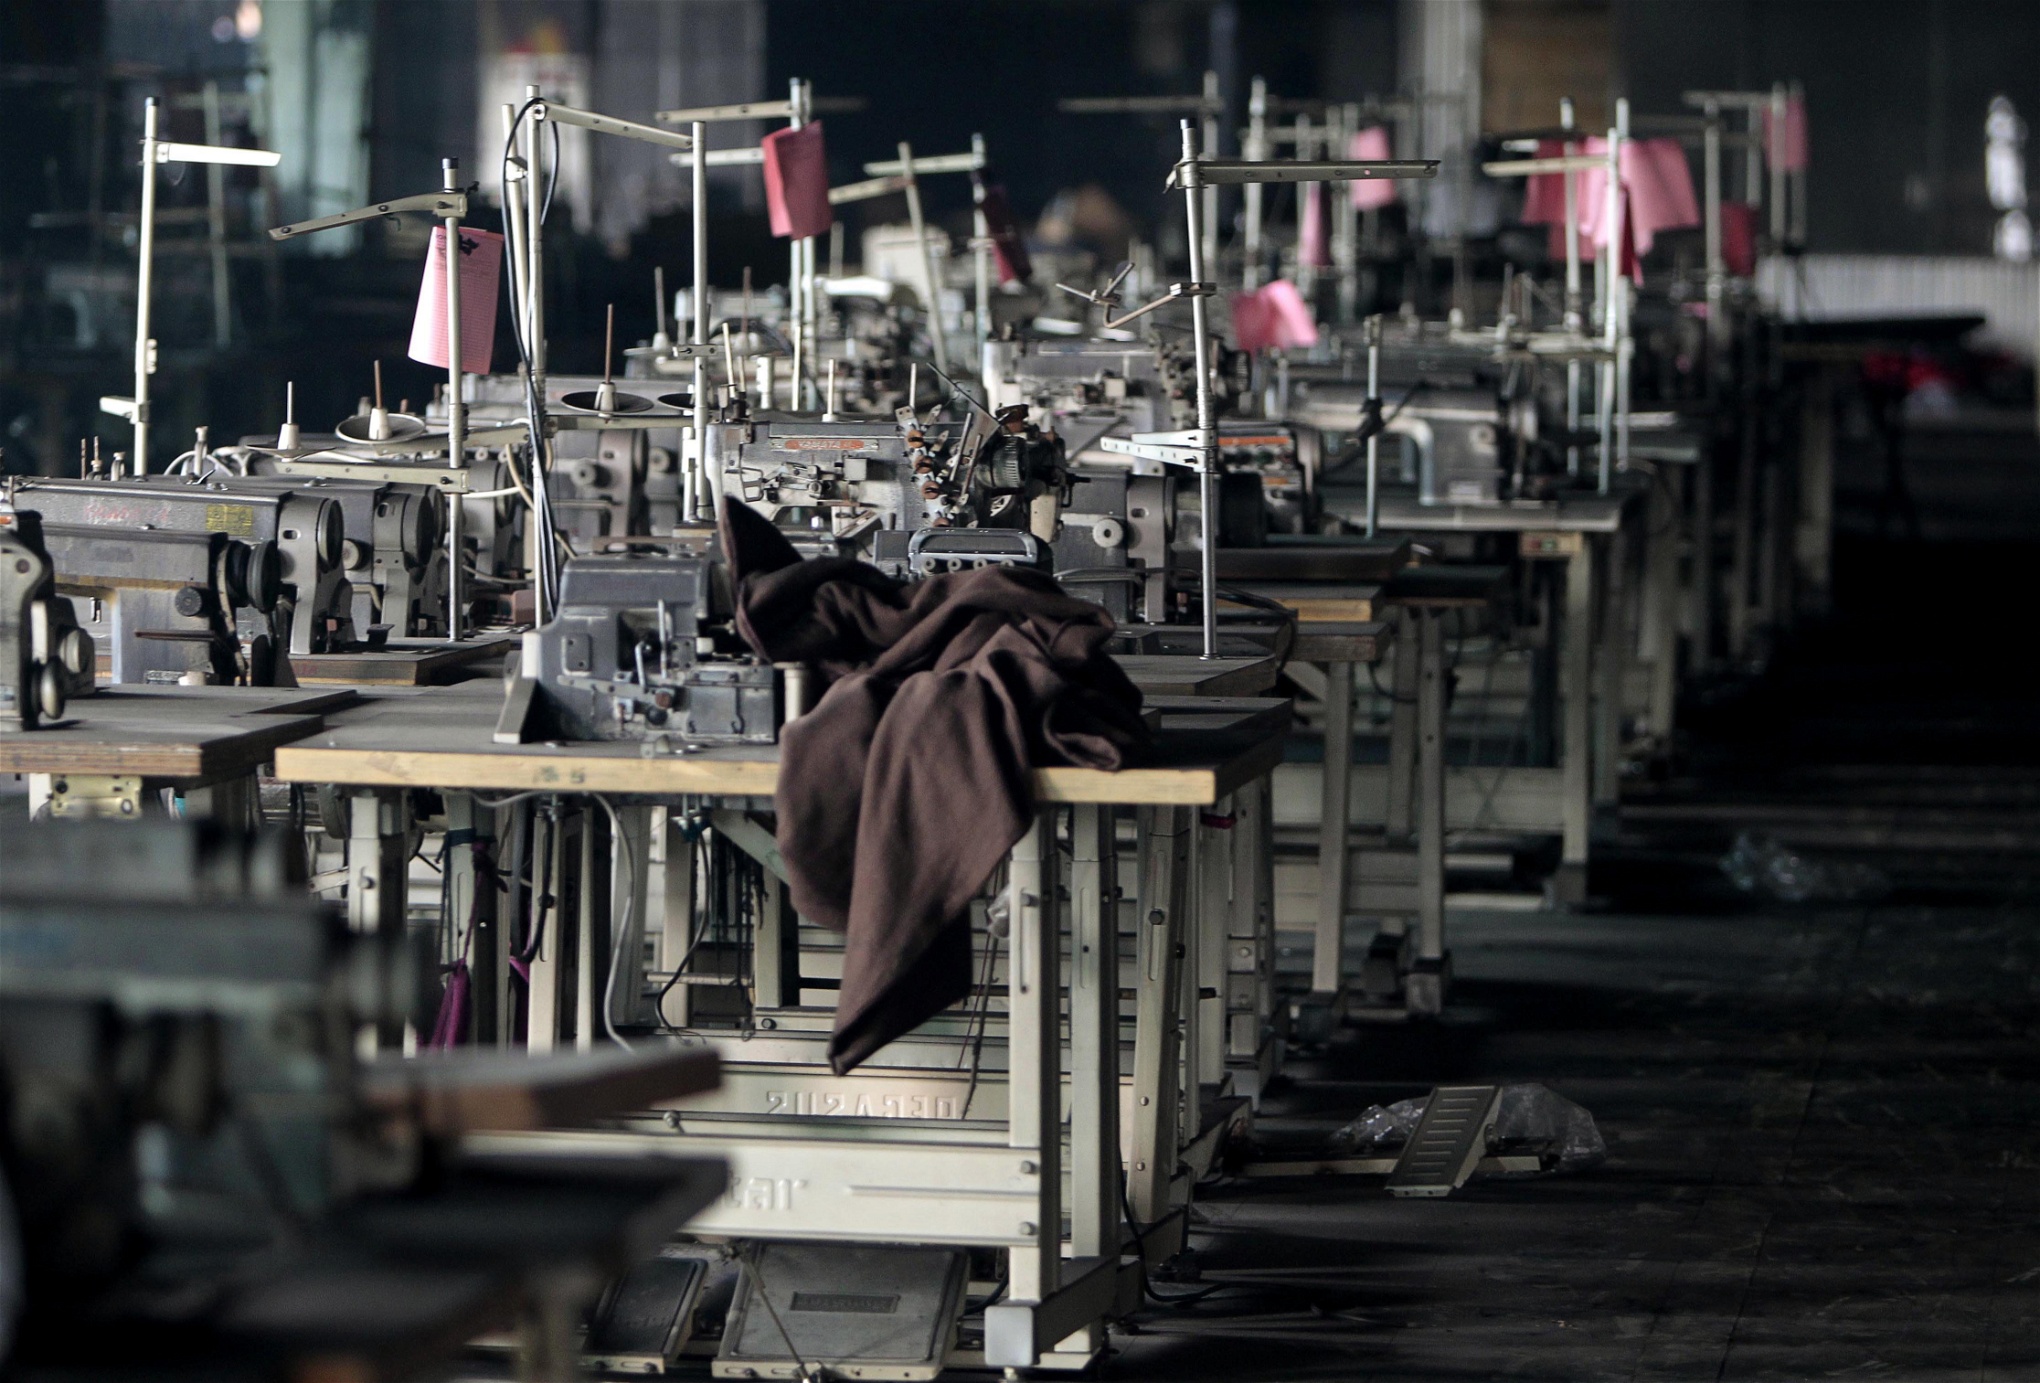 Interiör från Tazreen-fabriken i Savar i Bangladesh där över 100 arbetare miste livet i en brand den 24 november 2012.